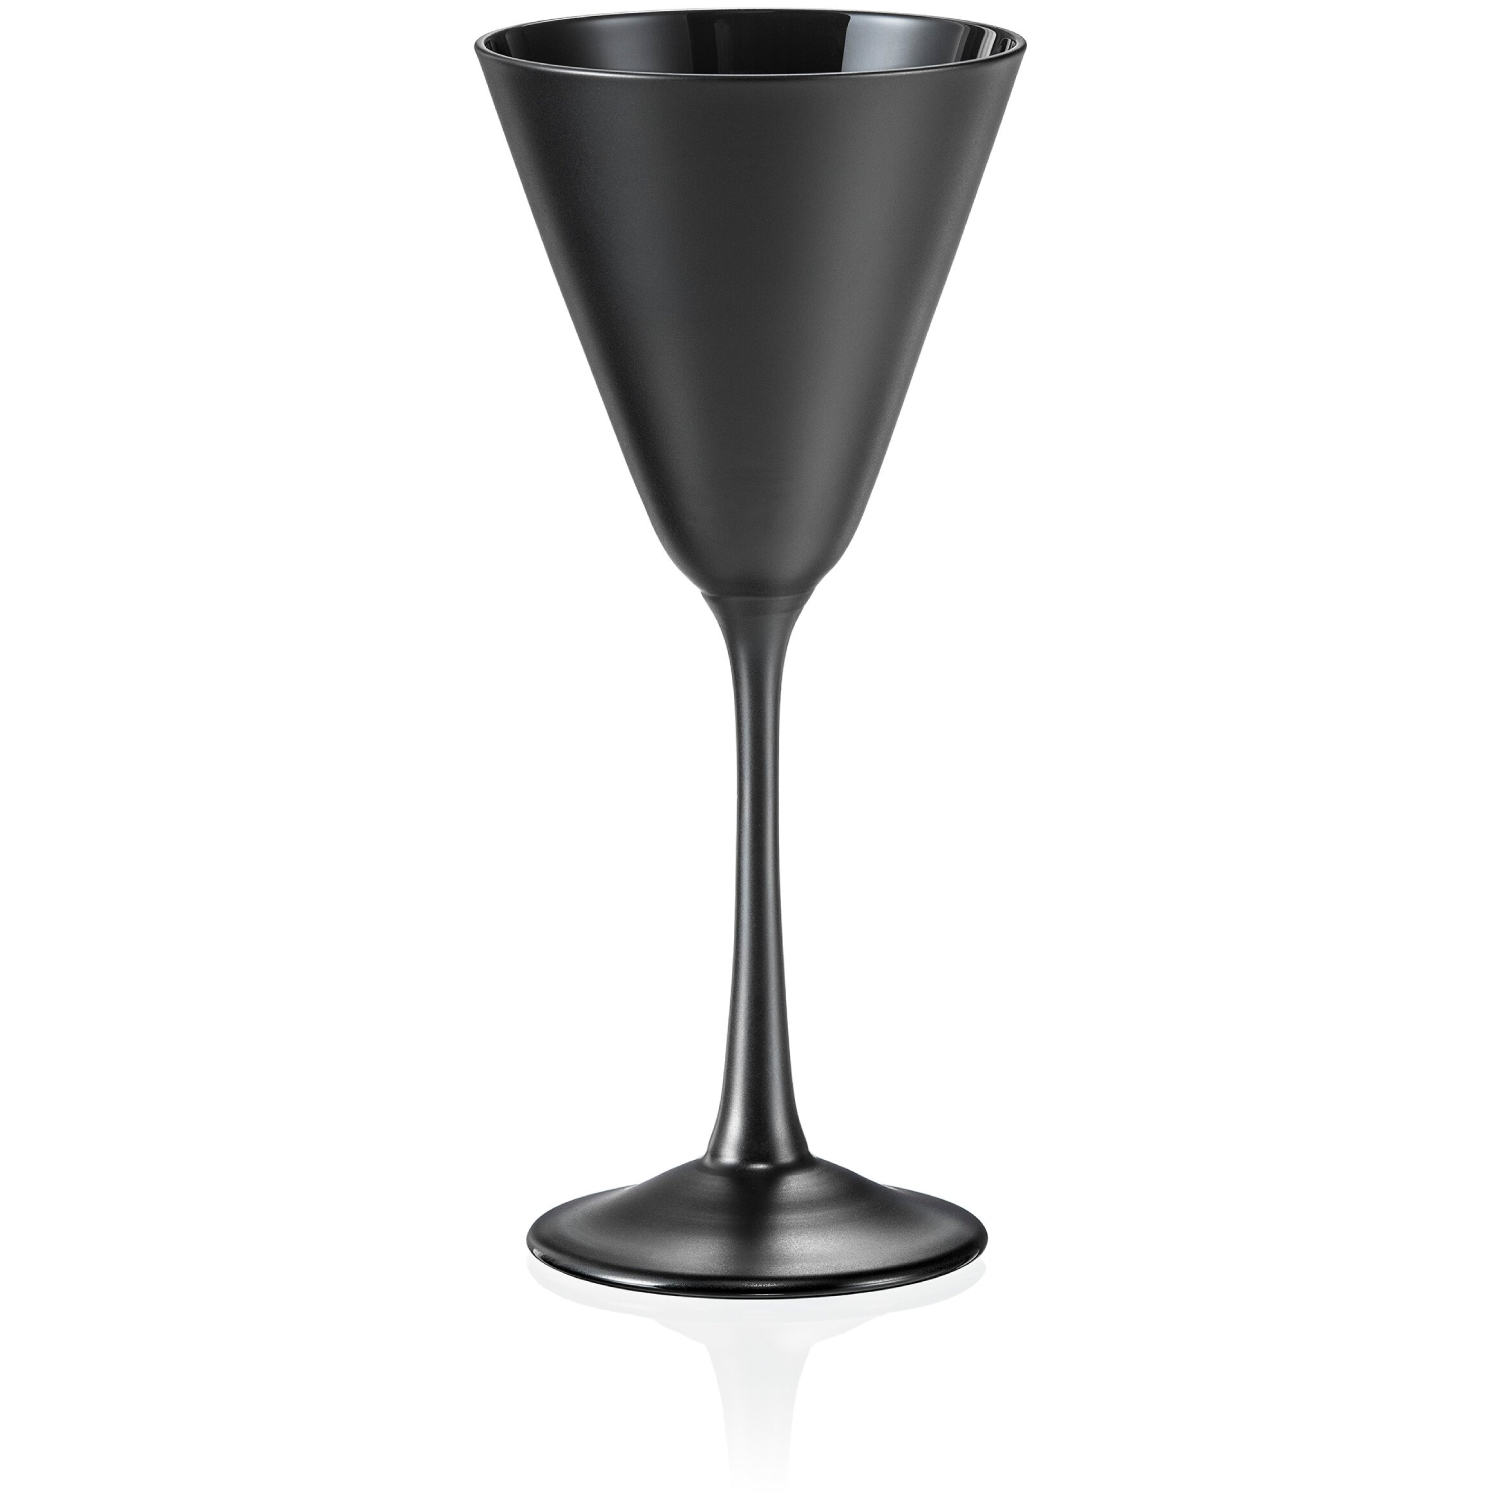 Набор бокалов Crystalex Пралине для мартини черный 90 мл 4 шт набор бокалов для коктейля crystalex пралине 4 шт